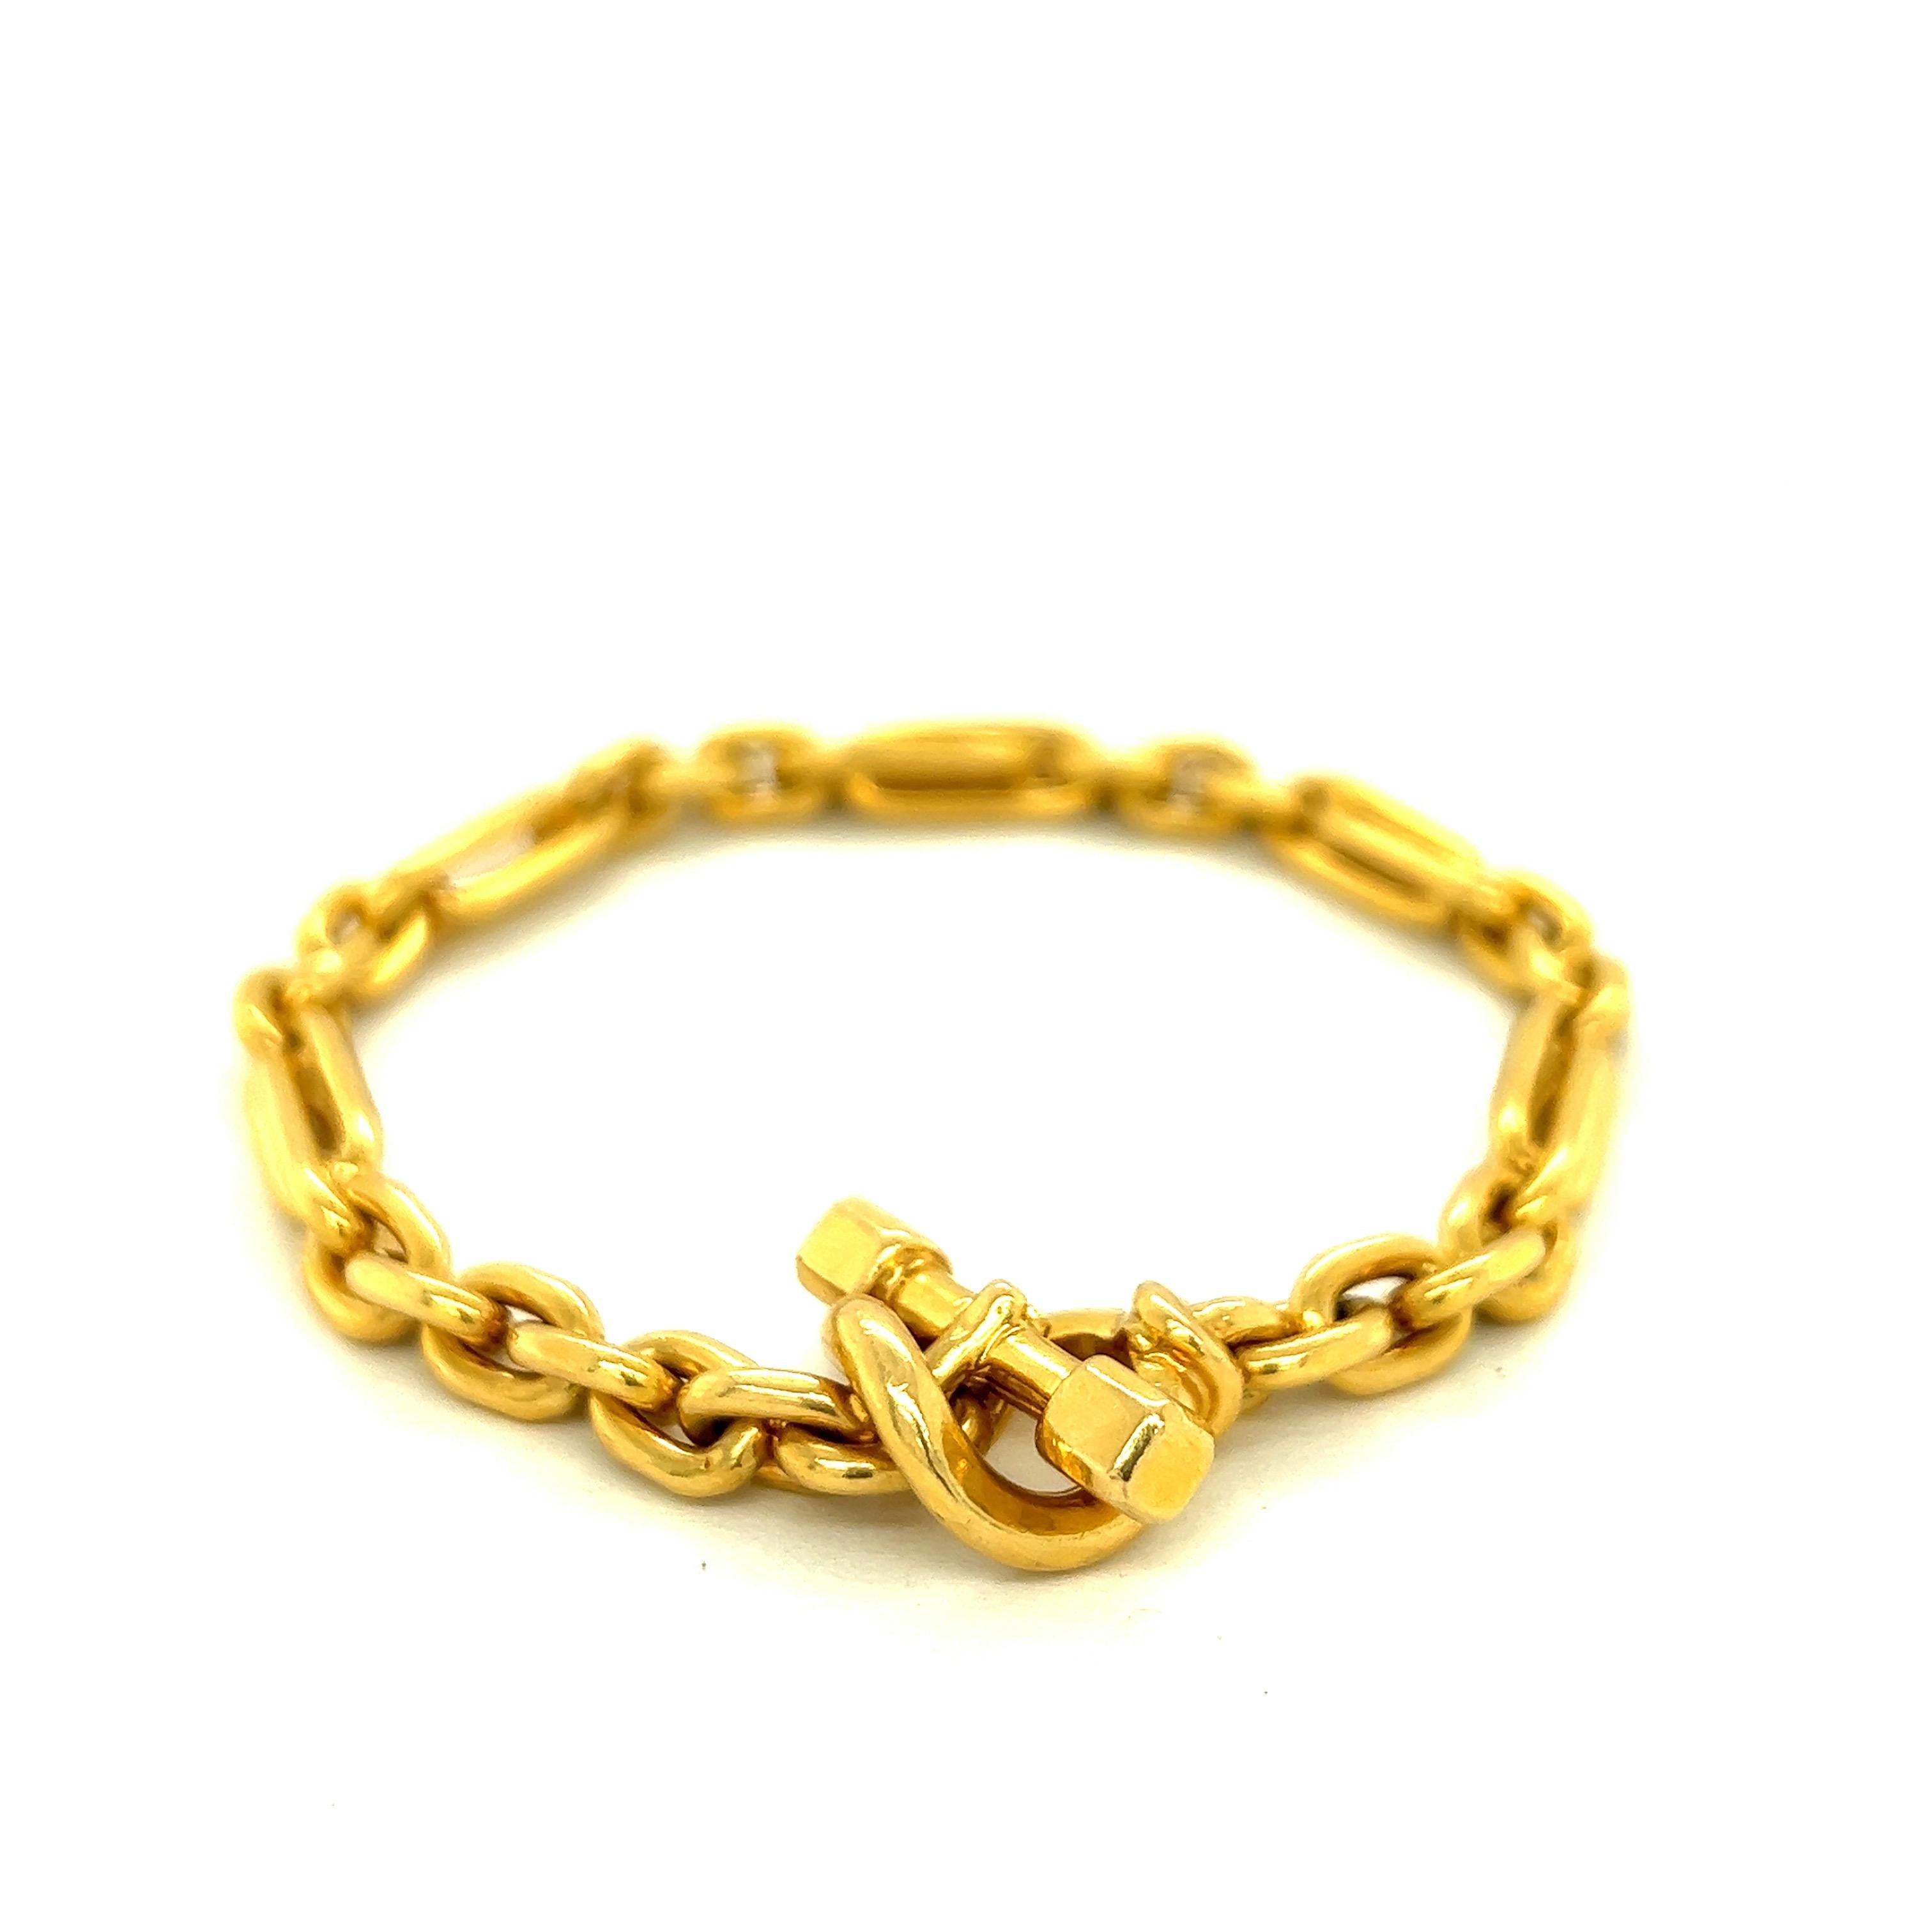 Hermés Paris 18k Yellow Gold Link Bracelet

Link bracelet made of 18 karat yellow gold; marked Hermés Paris, French assay mark

Size: width 0.6 cm, length 20.6 cm
Total weight: 46.0 grams